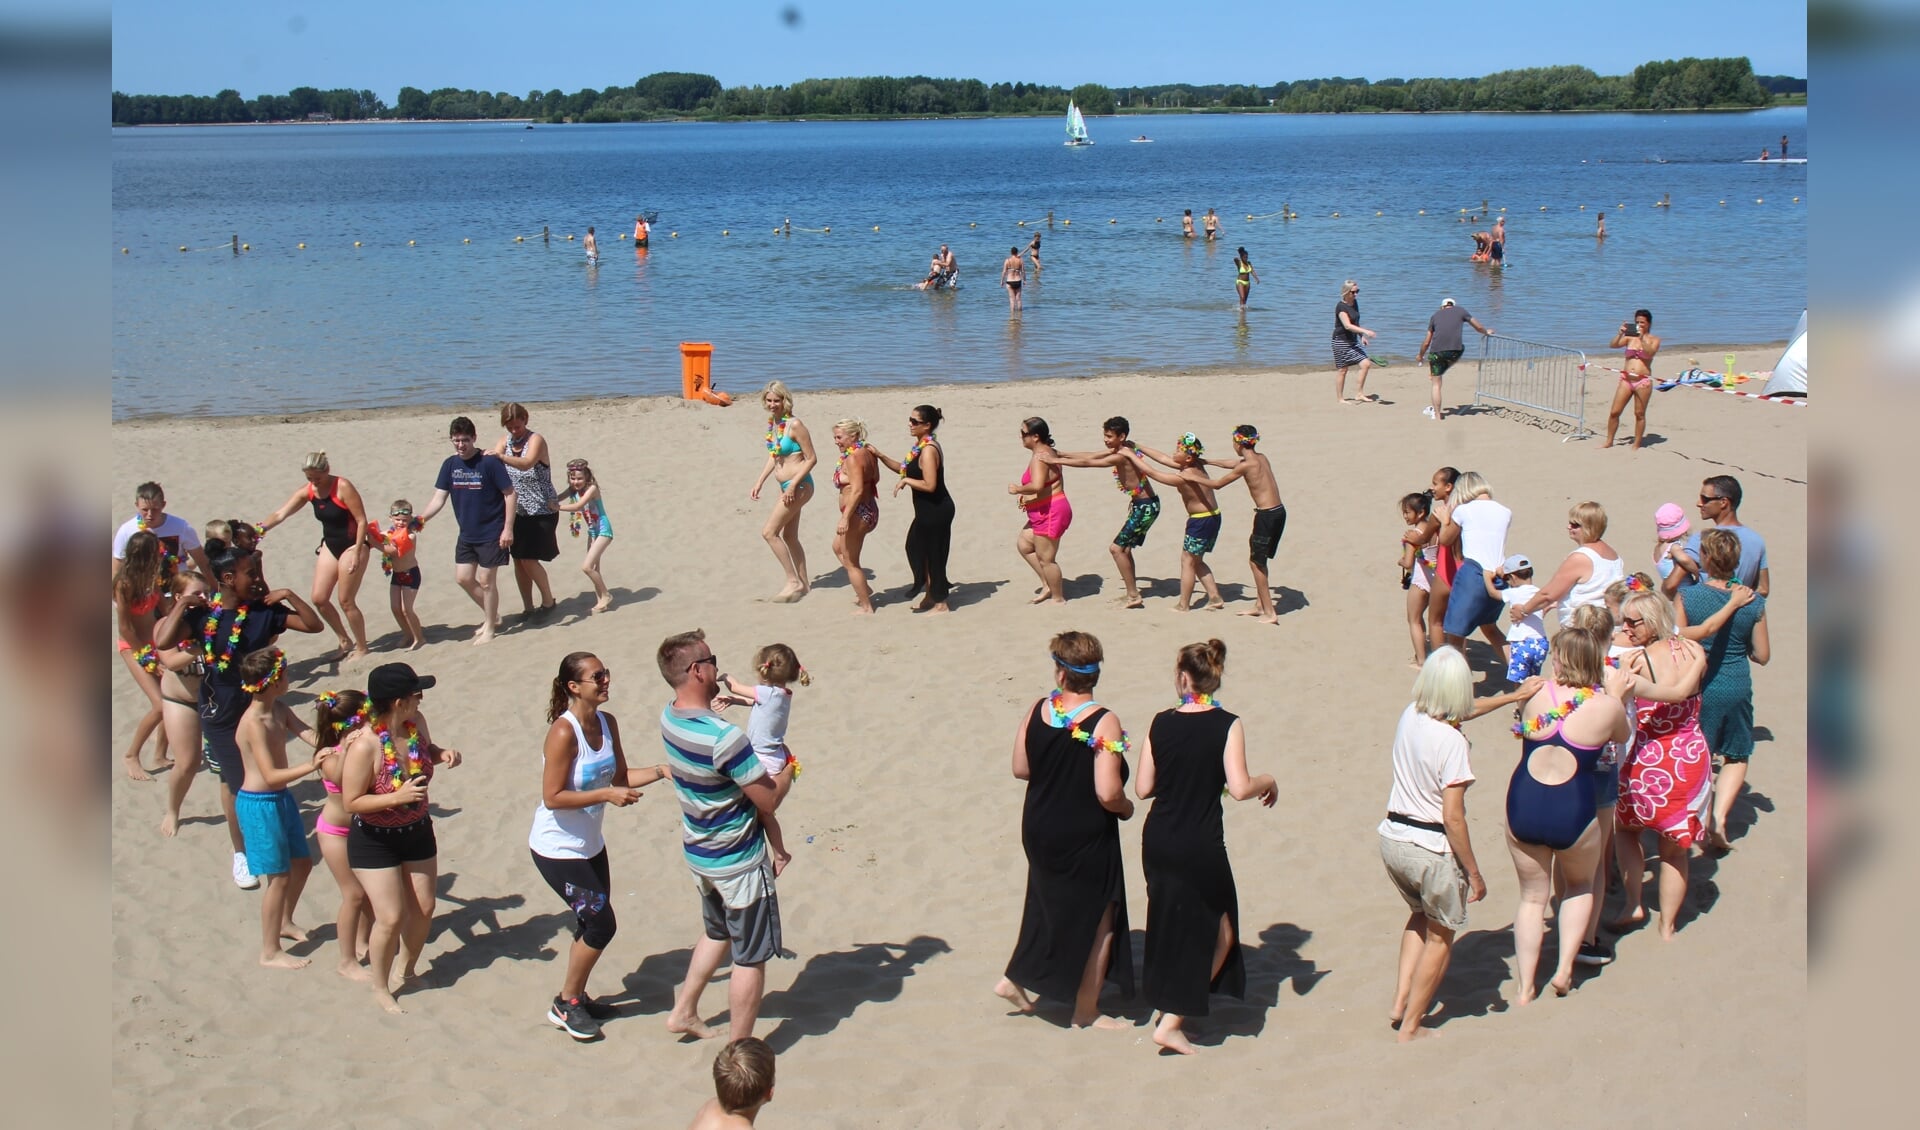 Op de vrolijke klanken van salsamuziek werden de deelnemers op het strand alvast in de stemming gebracht.(foto en tekst: Erik van Leeuwen)